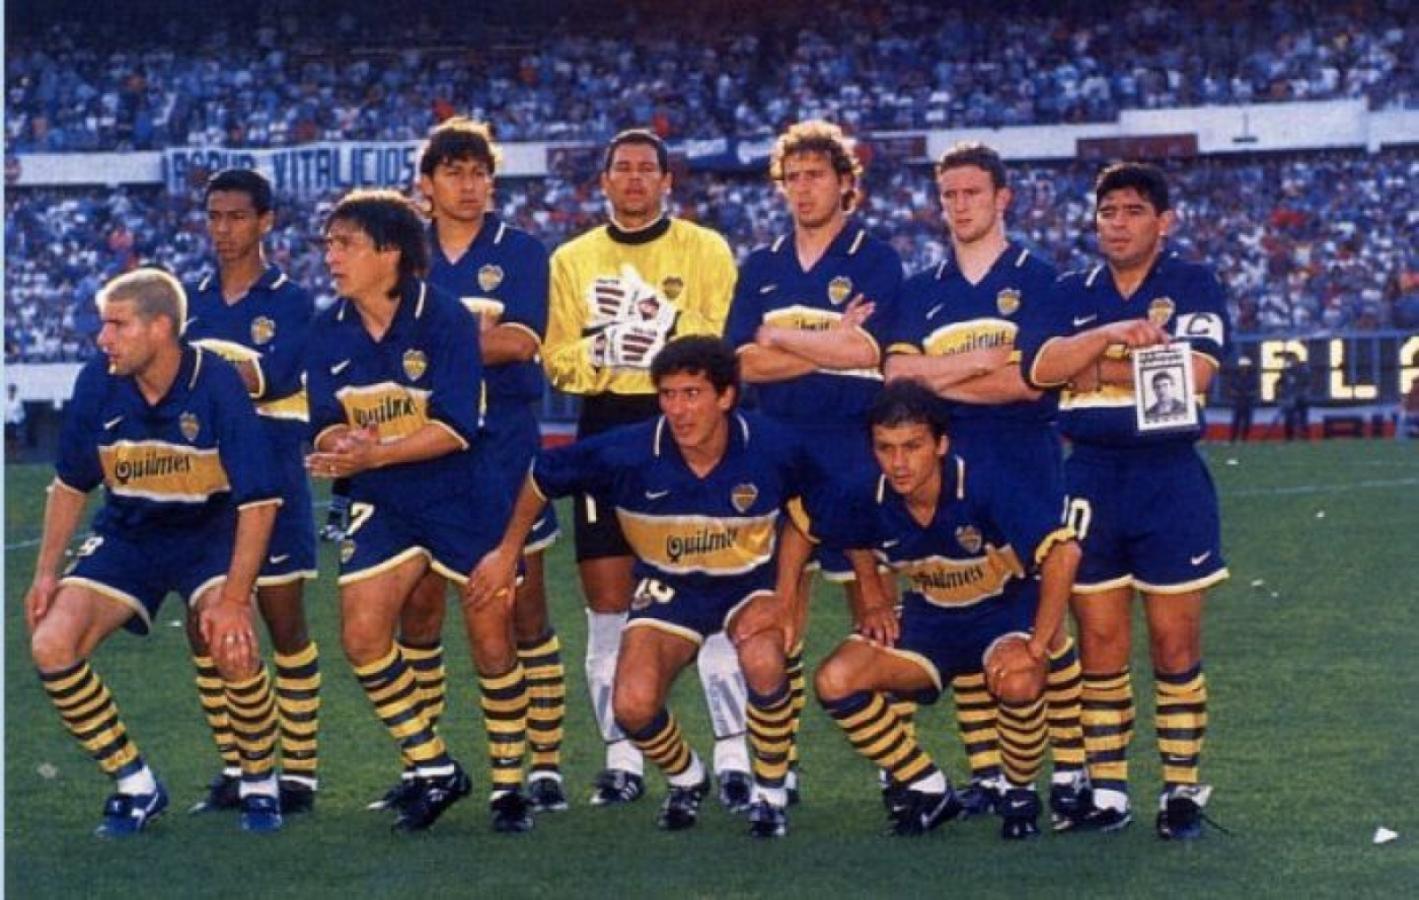 Imagen Torneo Apertura 1997: último partido de Maradona como profesional. A un lado, Arruabarrena. Martín Palermo hizo el gol de la victoria 2-1 contra River y Riquelme reemplazó al 10 en el entretiempo 